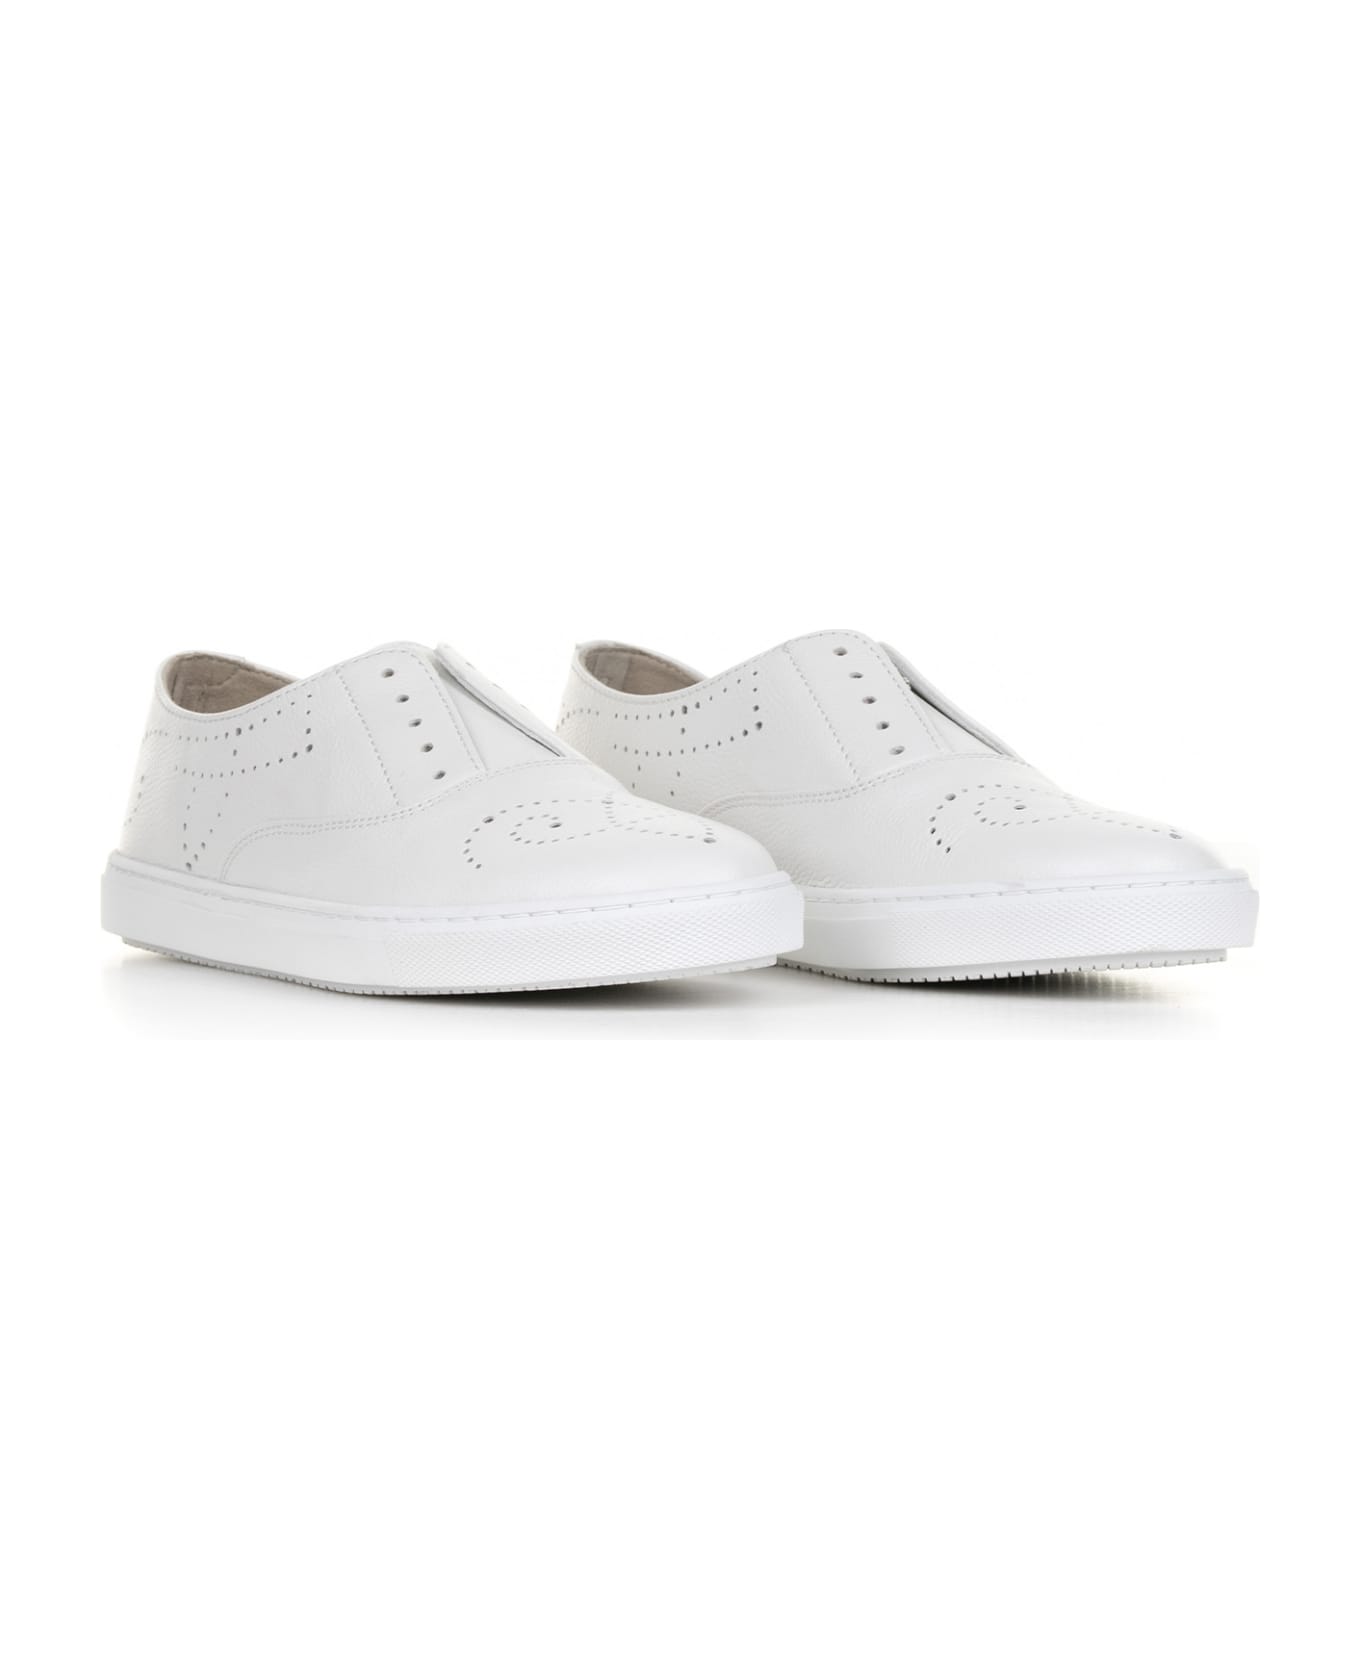 Fratelli Rossetti One White Leather Slip-on Sneaker - BIANCO スニーカー